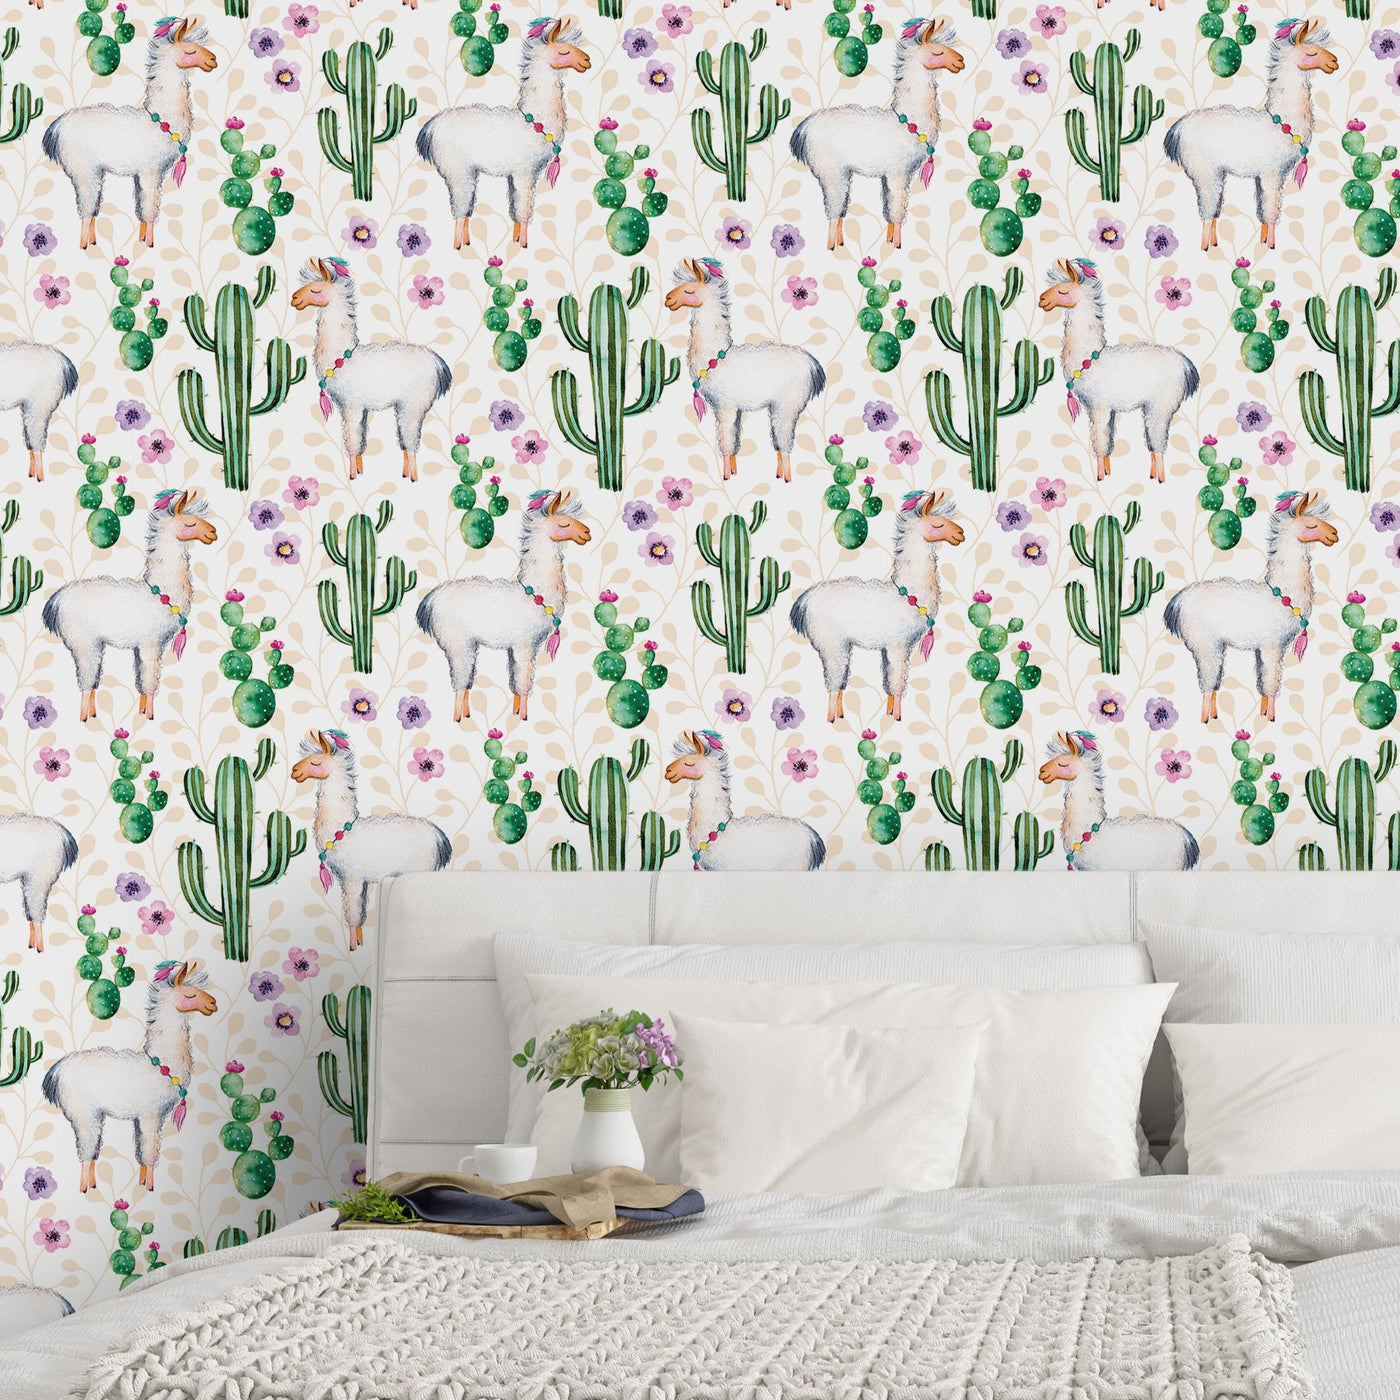 Watercolor Cactus & Llamas Wallpaper CC046